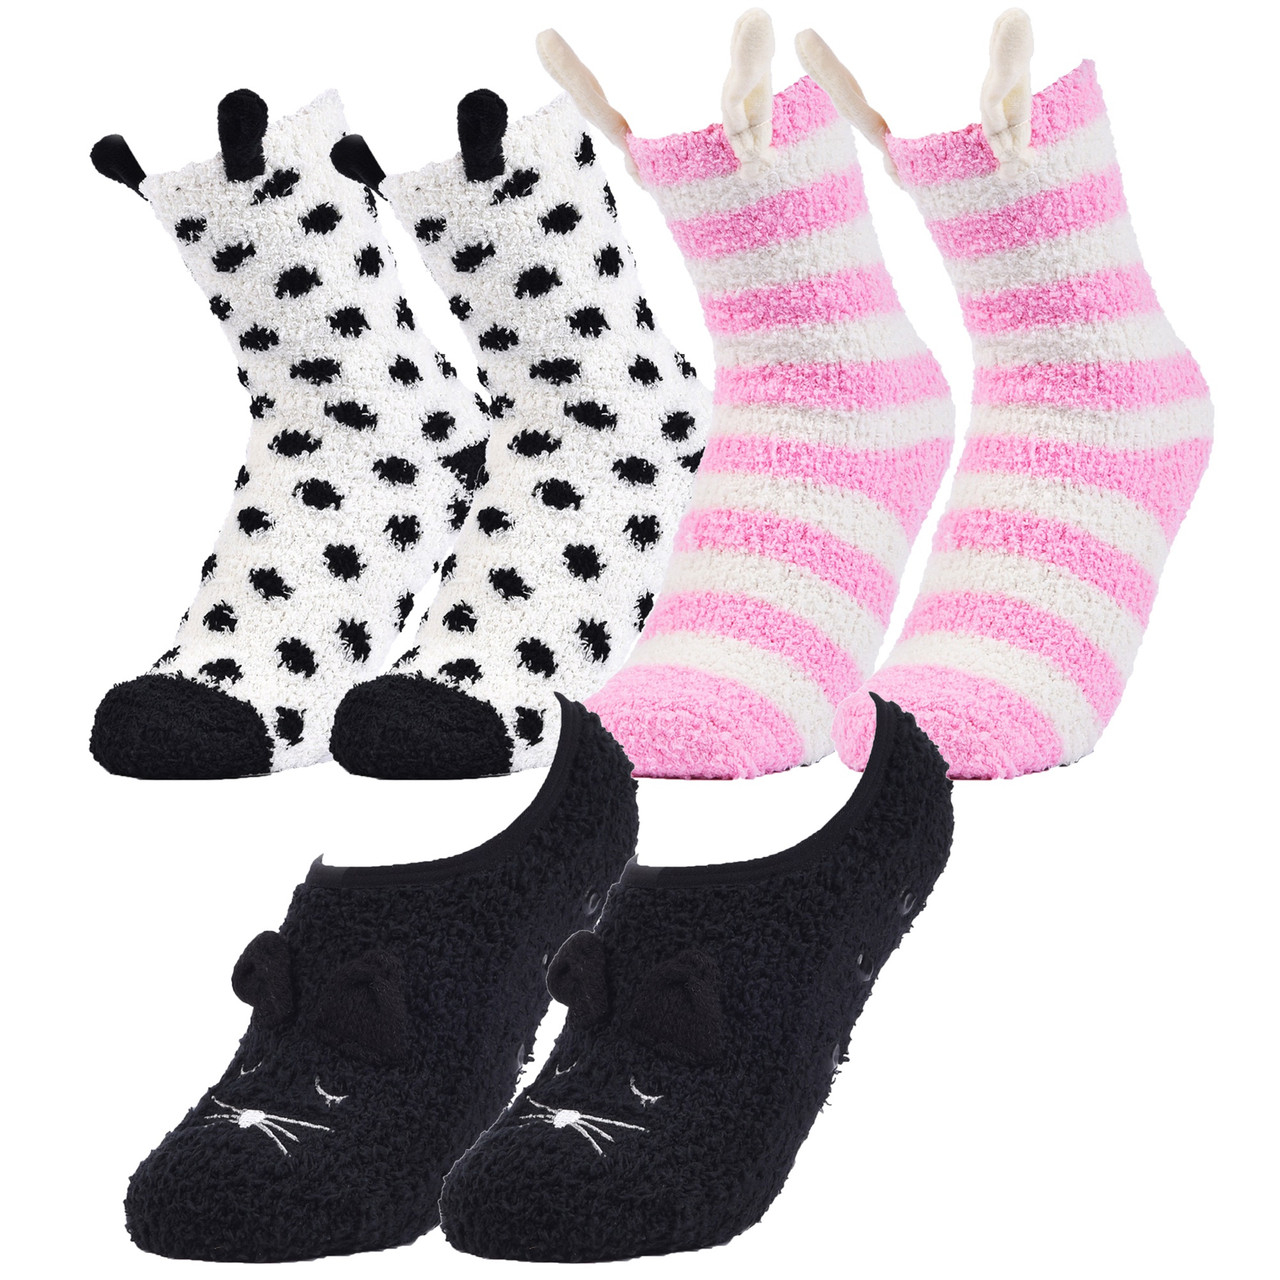 Anti-Slip Slipper Socks, 6 Pair, Gripper Bottom Indoor House Non